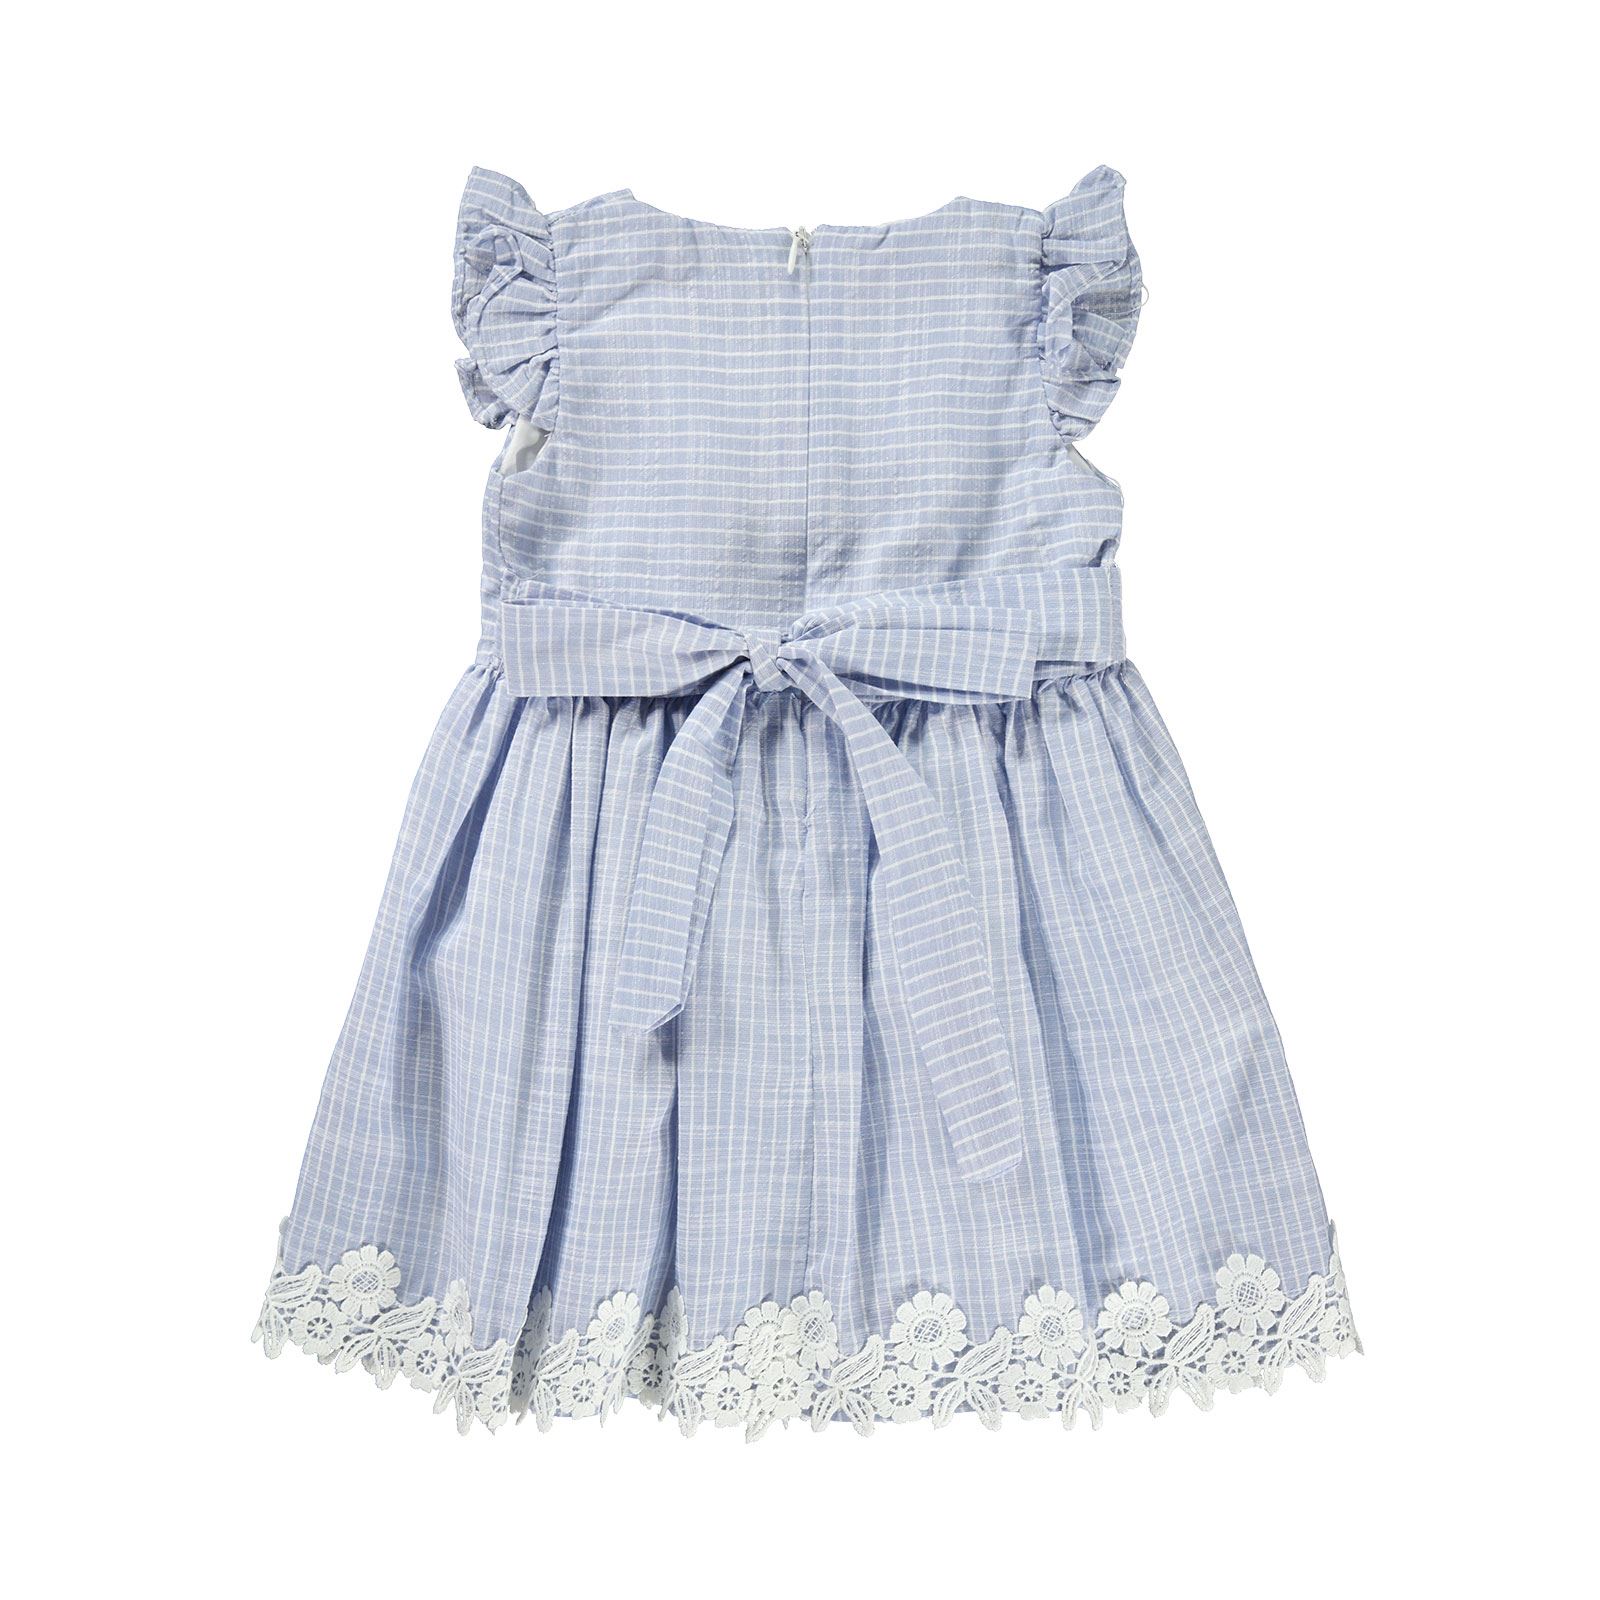 Gamzelim Kız Çocuk Elbise 2-5 Yaş Mavi